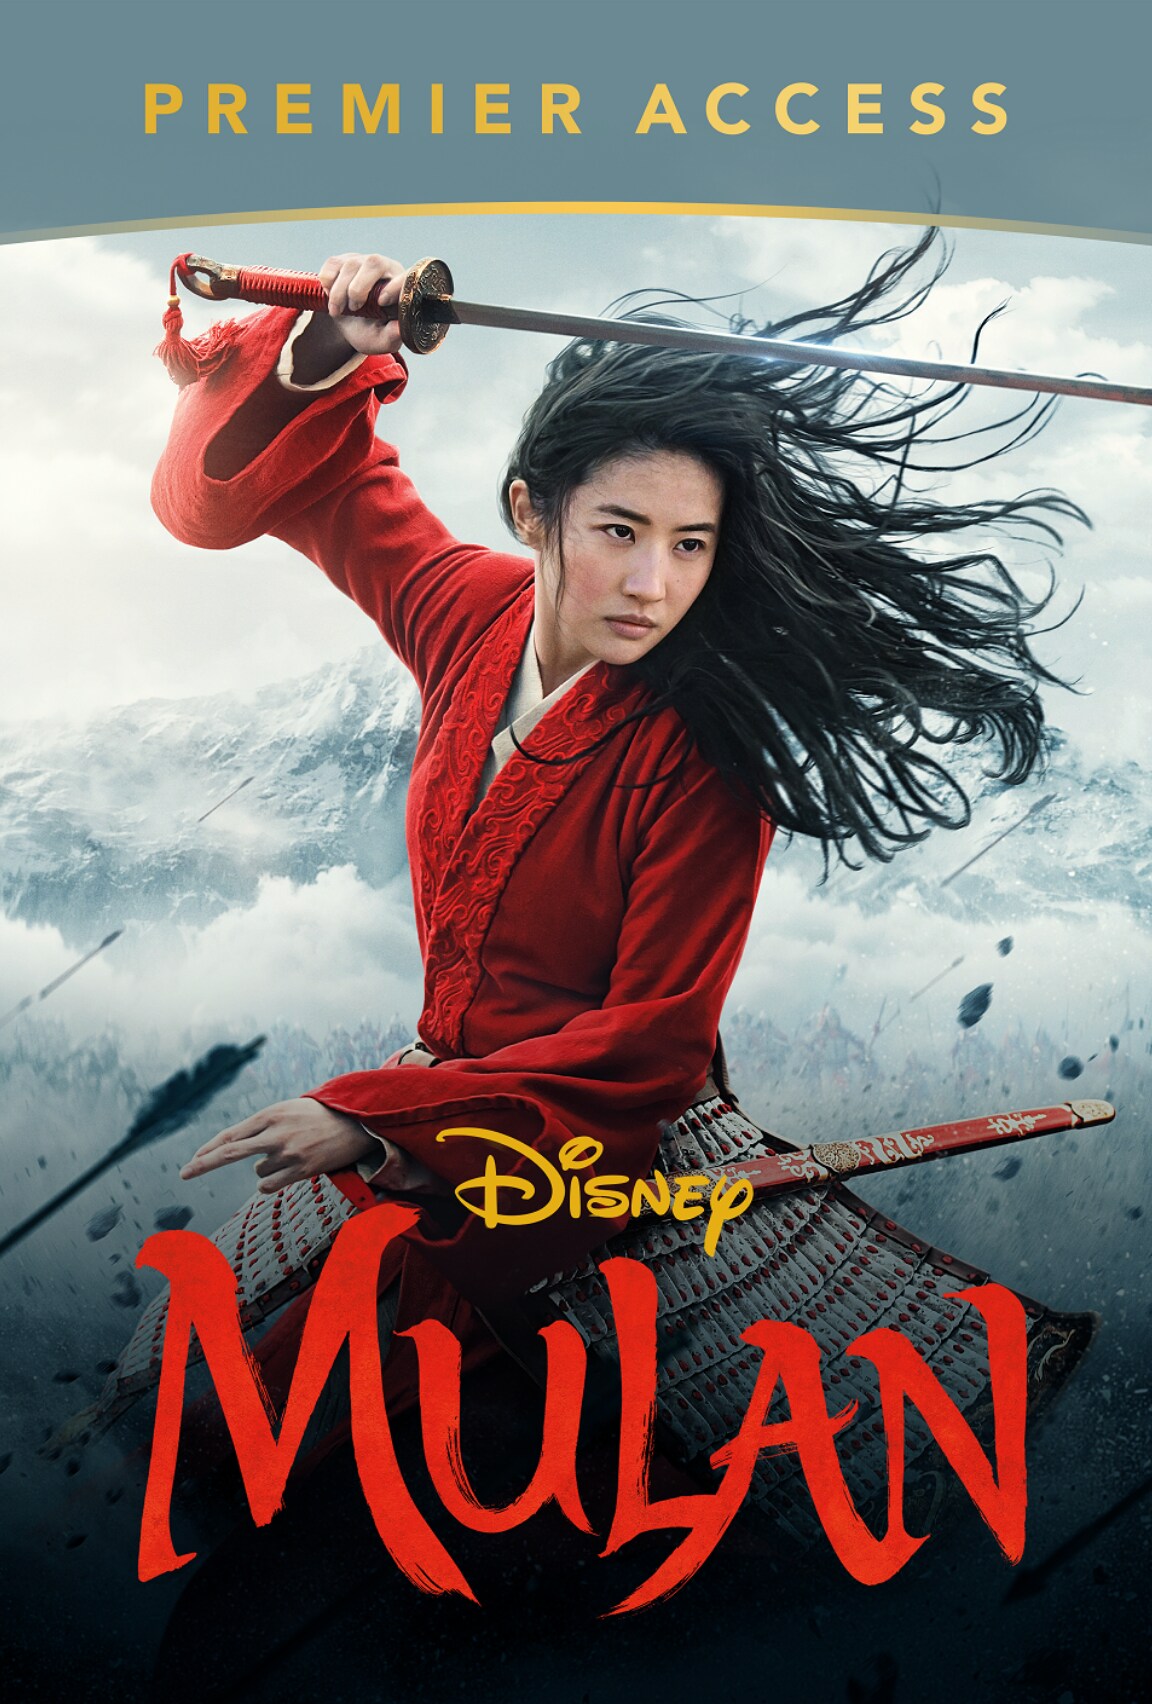 Disney's Mulan poster